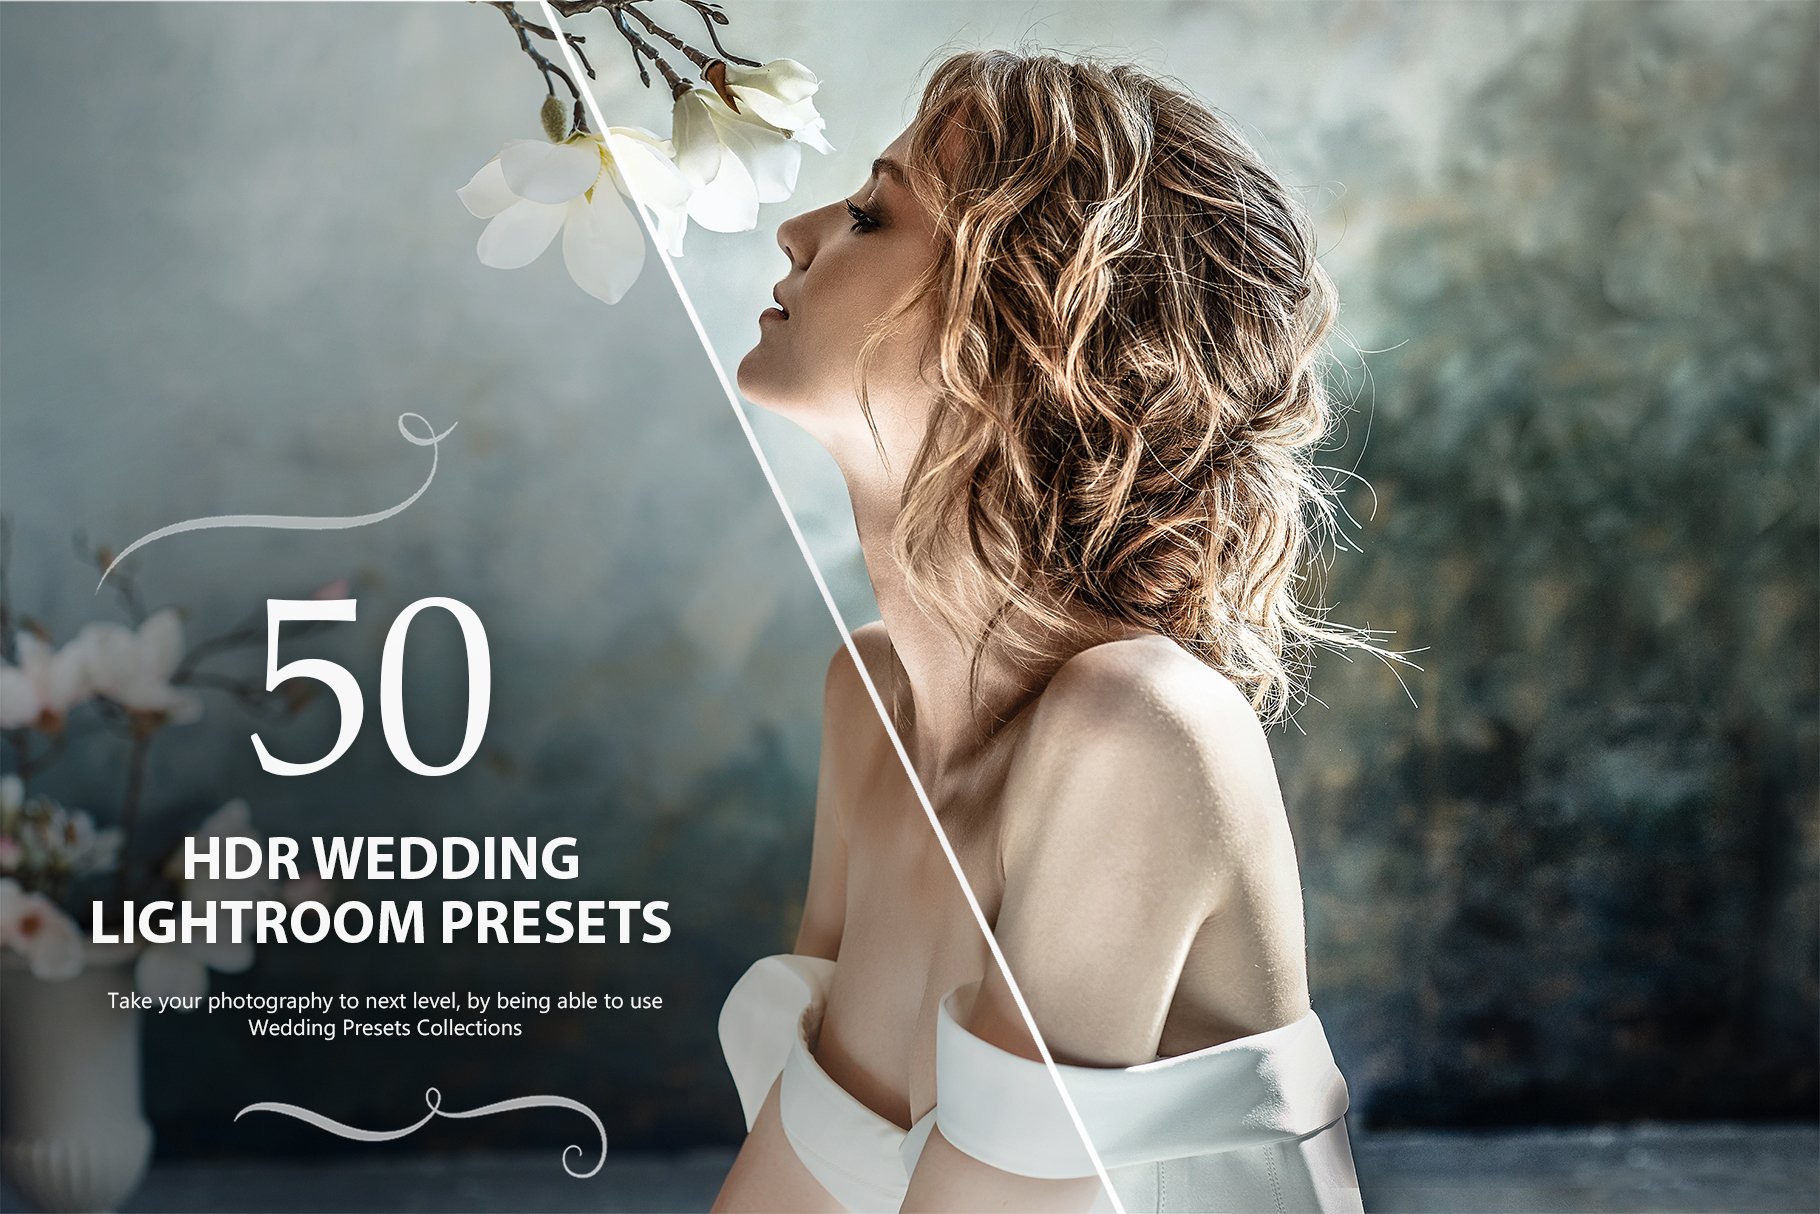 50 HDR Wedding Lightroom Presets